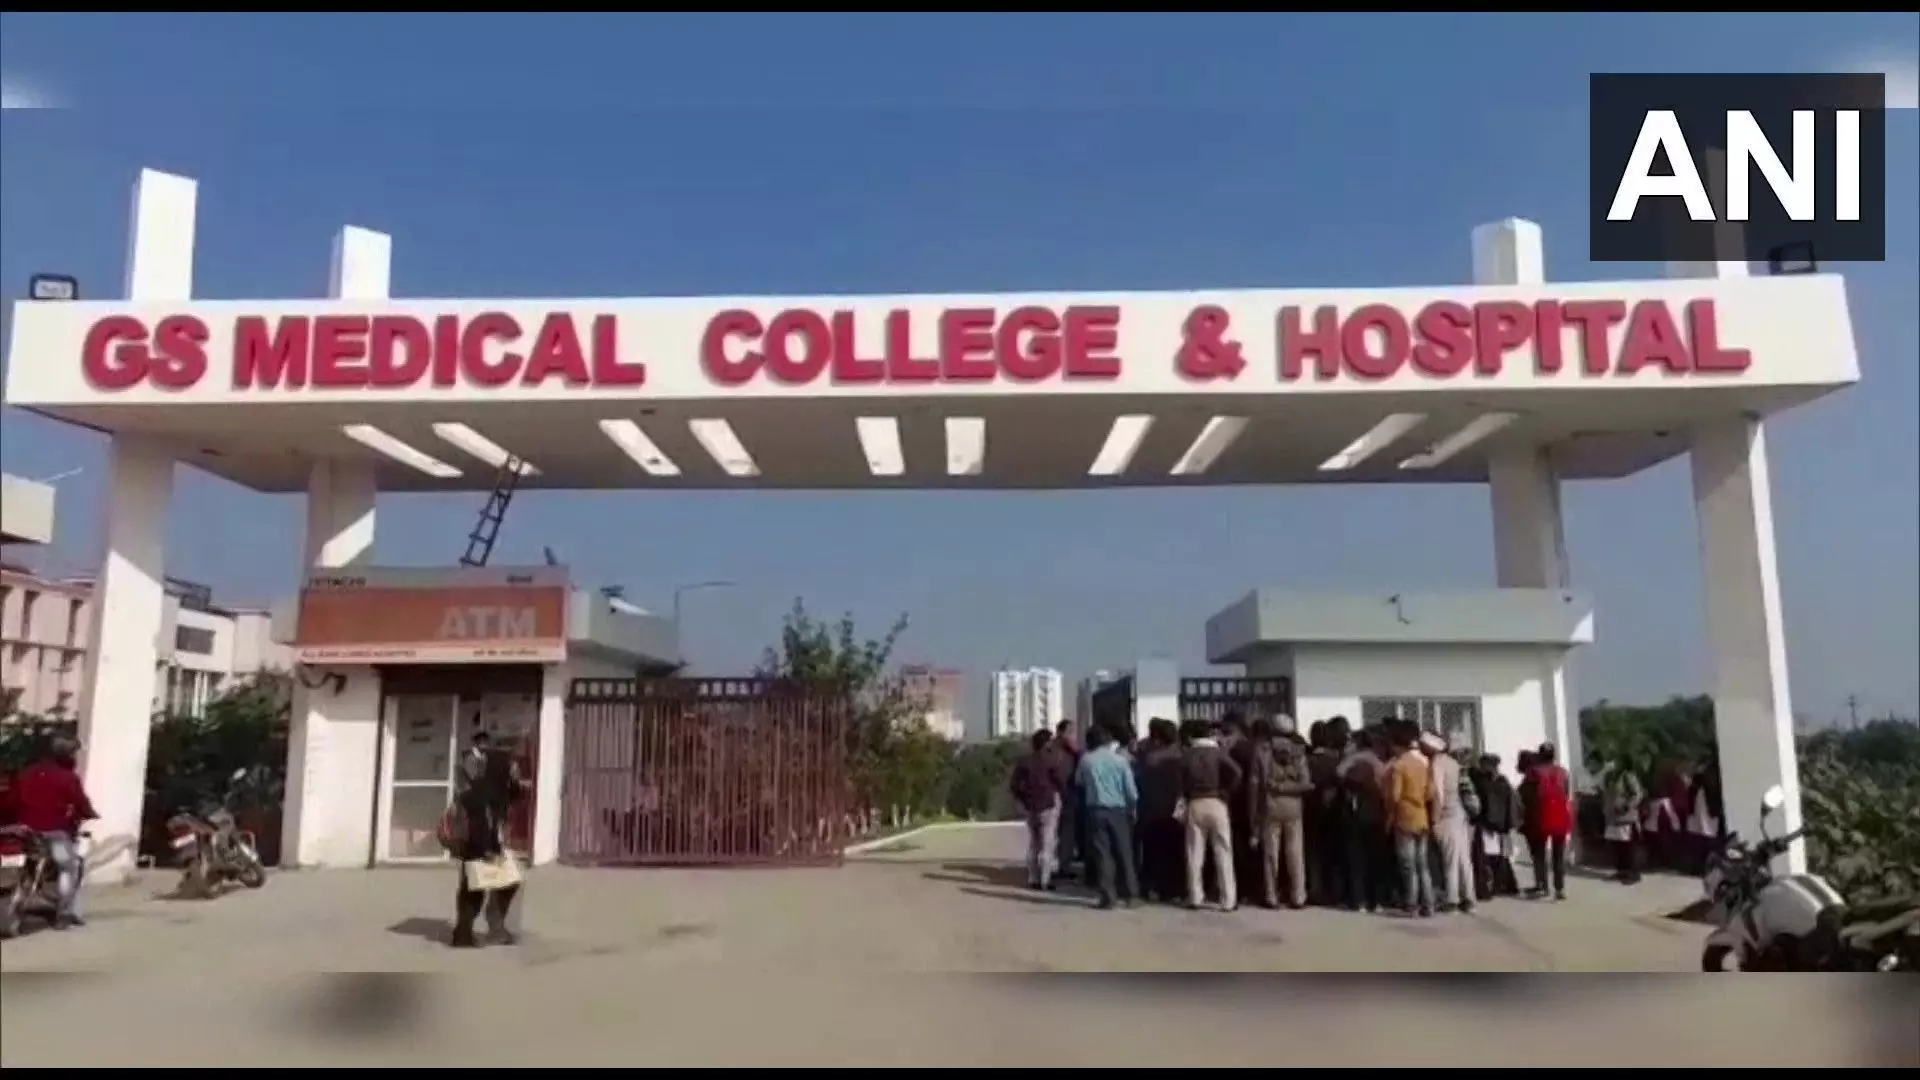 उत्तर प्रदेश: हापुड़ के जीएस मेडिकल कॉलेज एंड हॉस्पिटल में एमबीबीएस छात्र का शव मिला